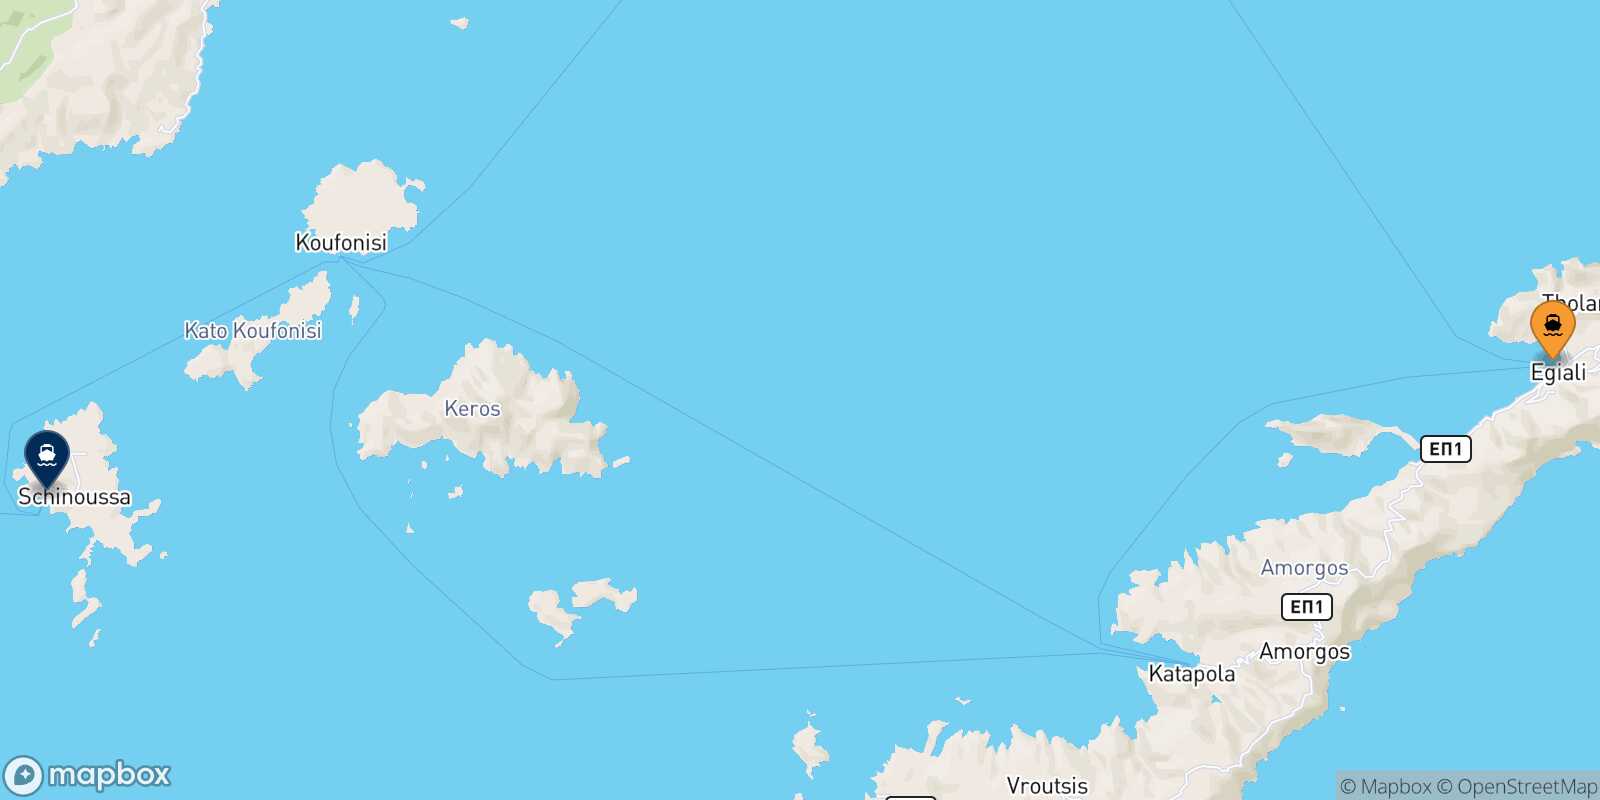 Aegiali (Amorgos) Schinoussa route map